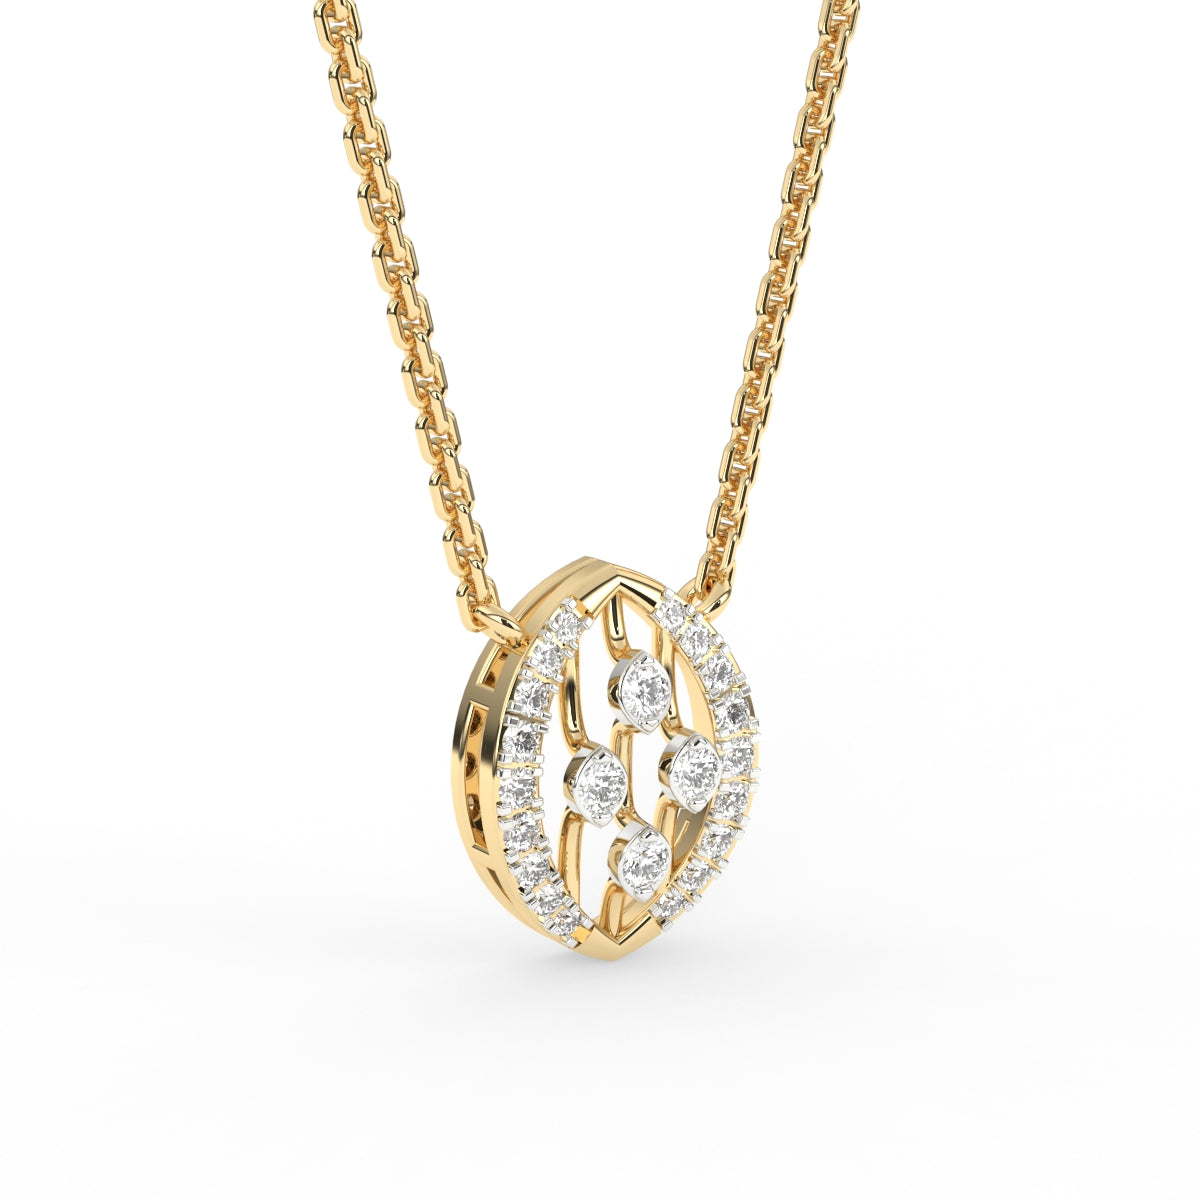 Delicate diamond pendant chain